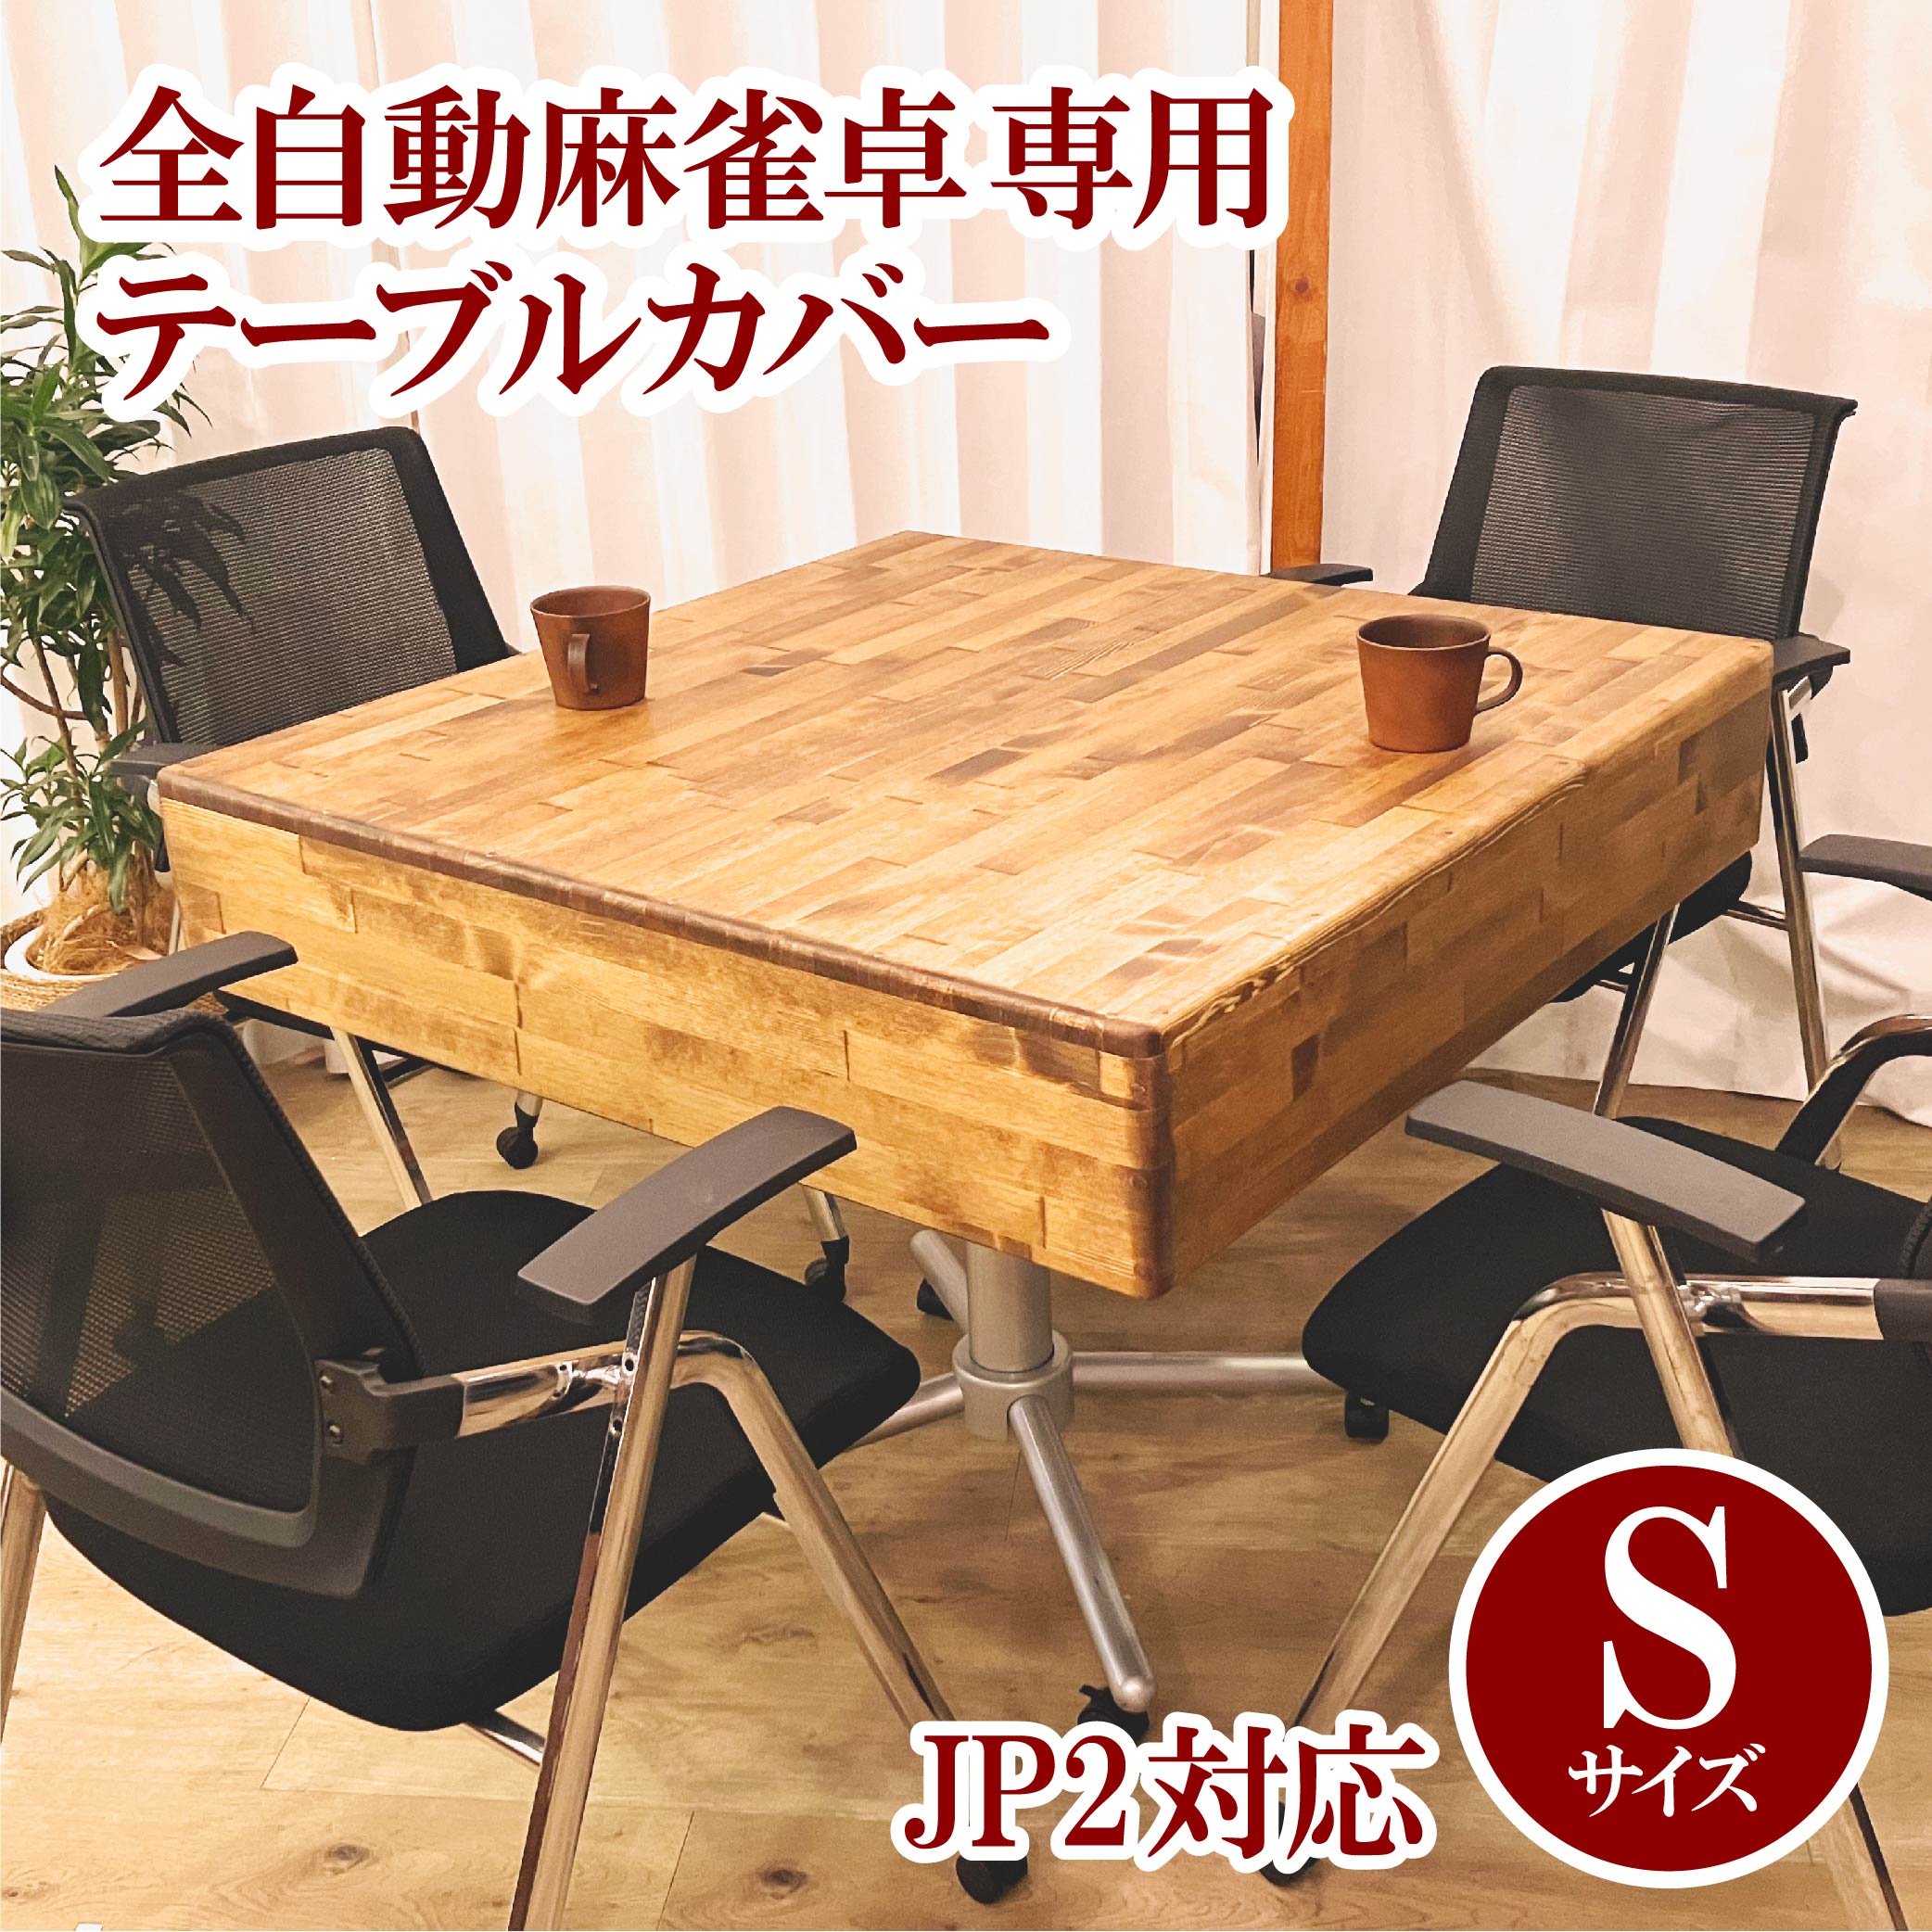 4か月後発送予定】【JP2用】木製テーブルカバー 全自動麻雀卓用 | AMOS 